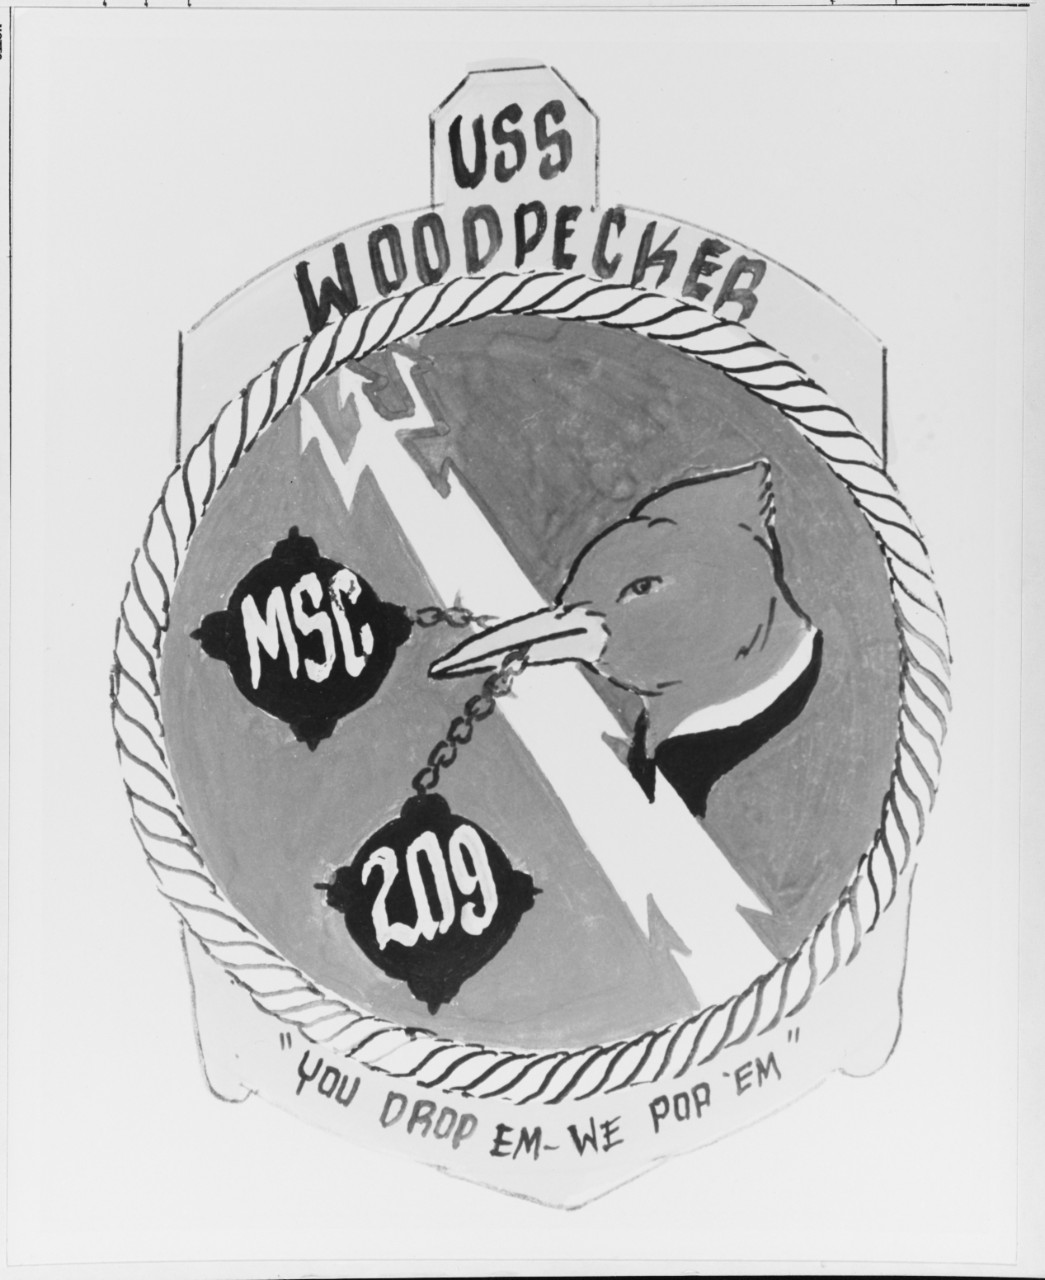 Insignia:  USS WOODPECKER (MSC-209)